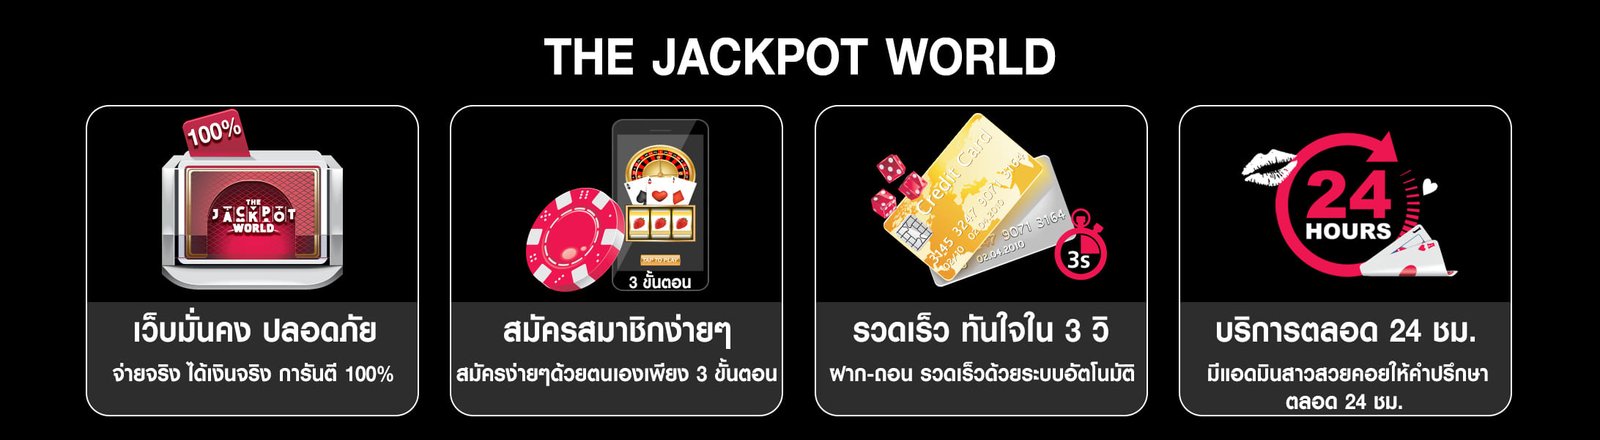 เว็บไซต์ The Jackpot World